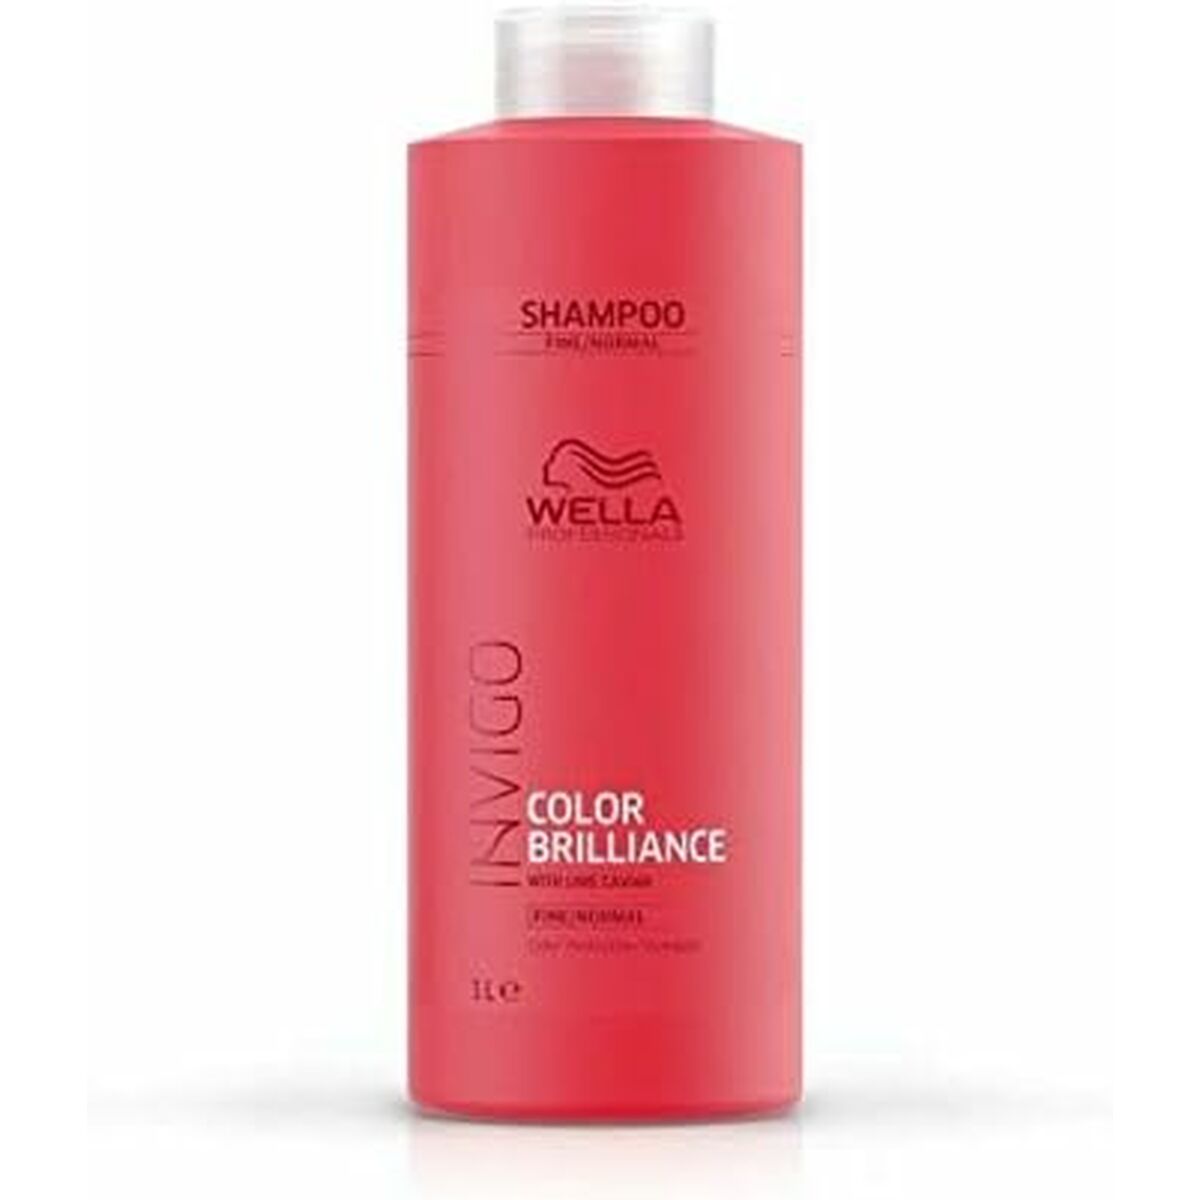 Shampoo Wella Invigo Color Brilliance 500 ml